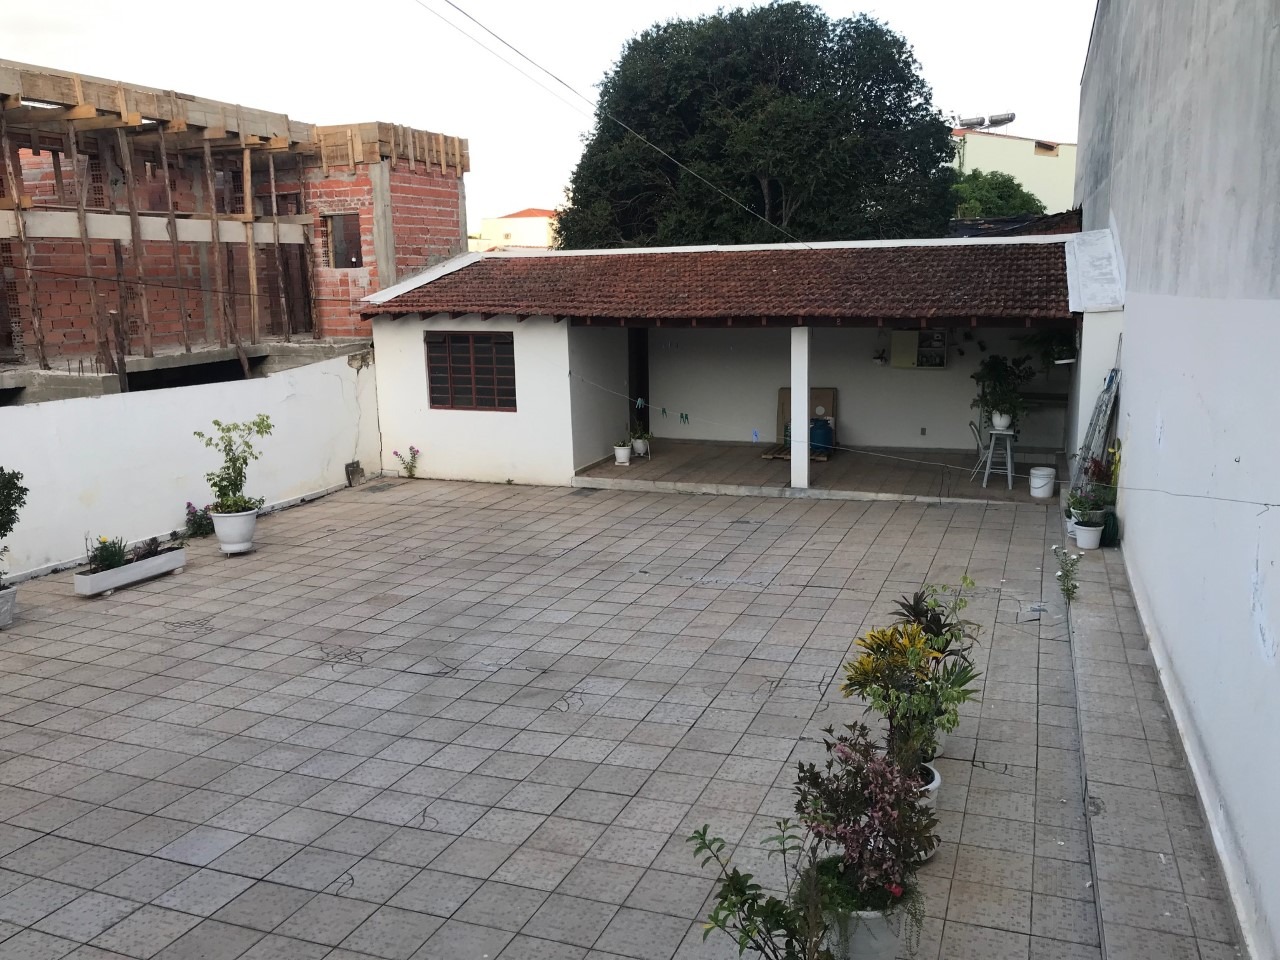 Casa para comprar, 2 quartos, 2 vagas, no bairro Areião em Piracicaba - SP